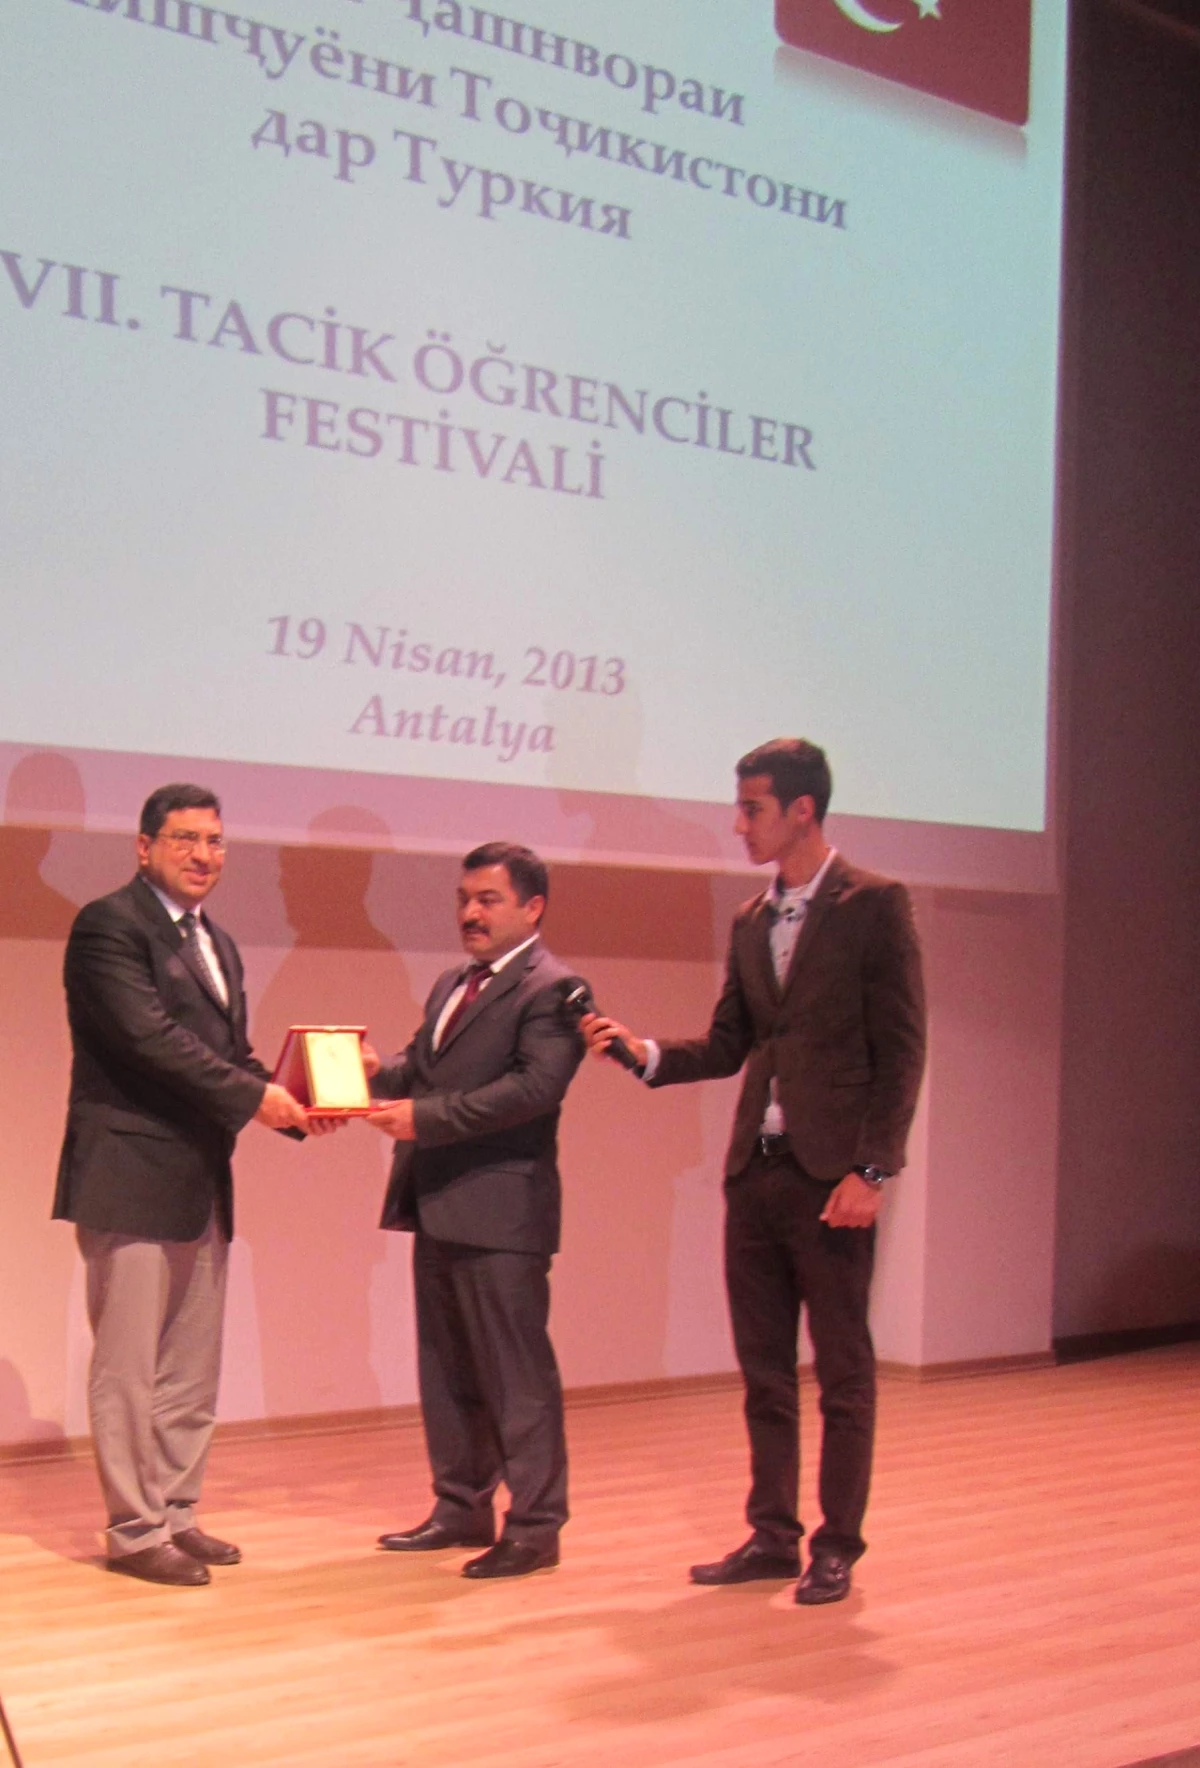 Uaü "7. Tacik Öğrenciler Festivali" Programına Ev Sahipliği Yapıyor